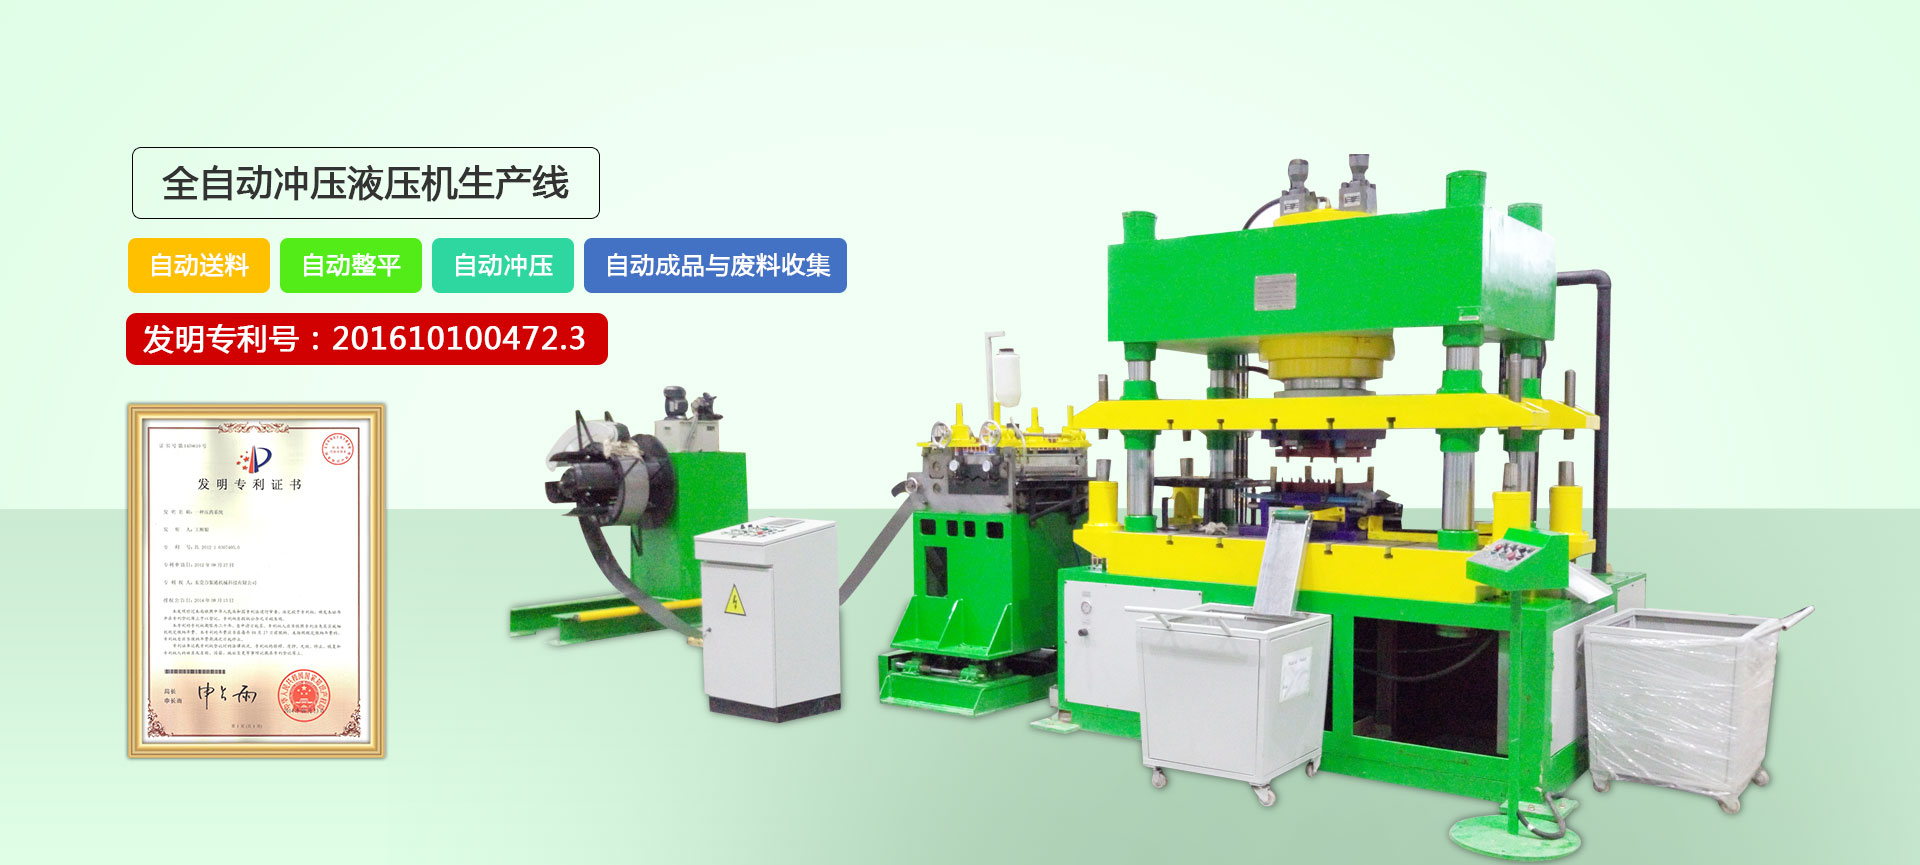 Gantry Hydraulic Press Applications